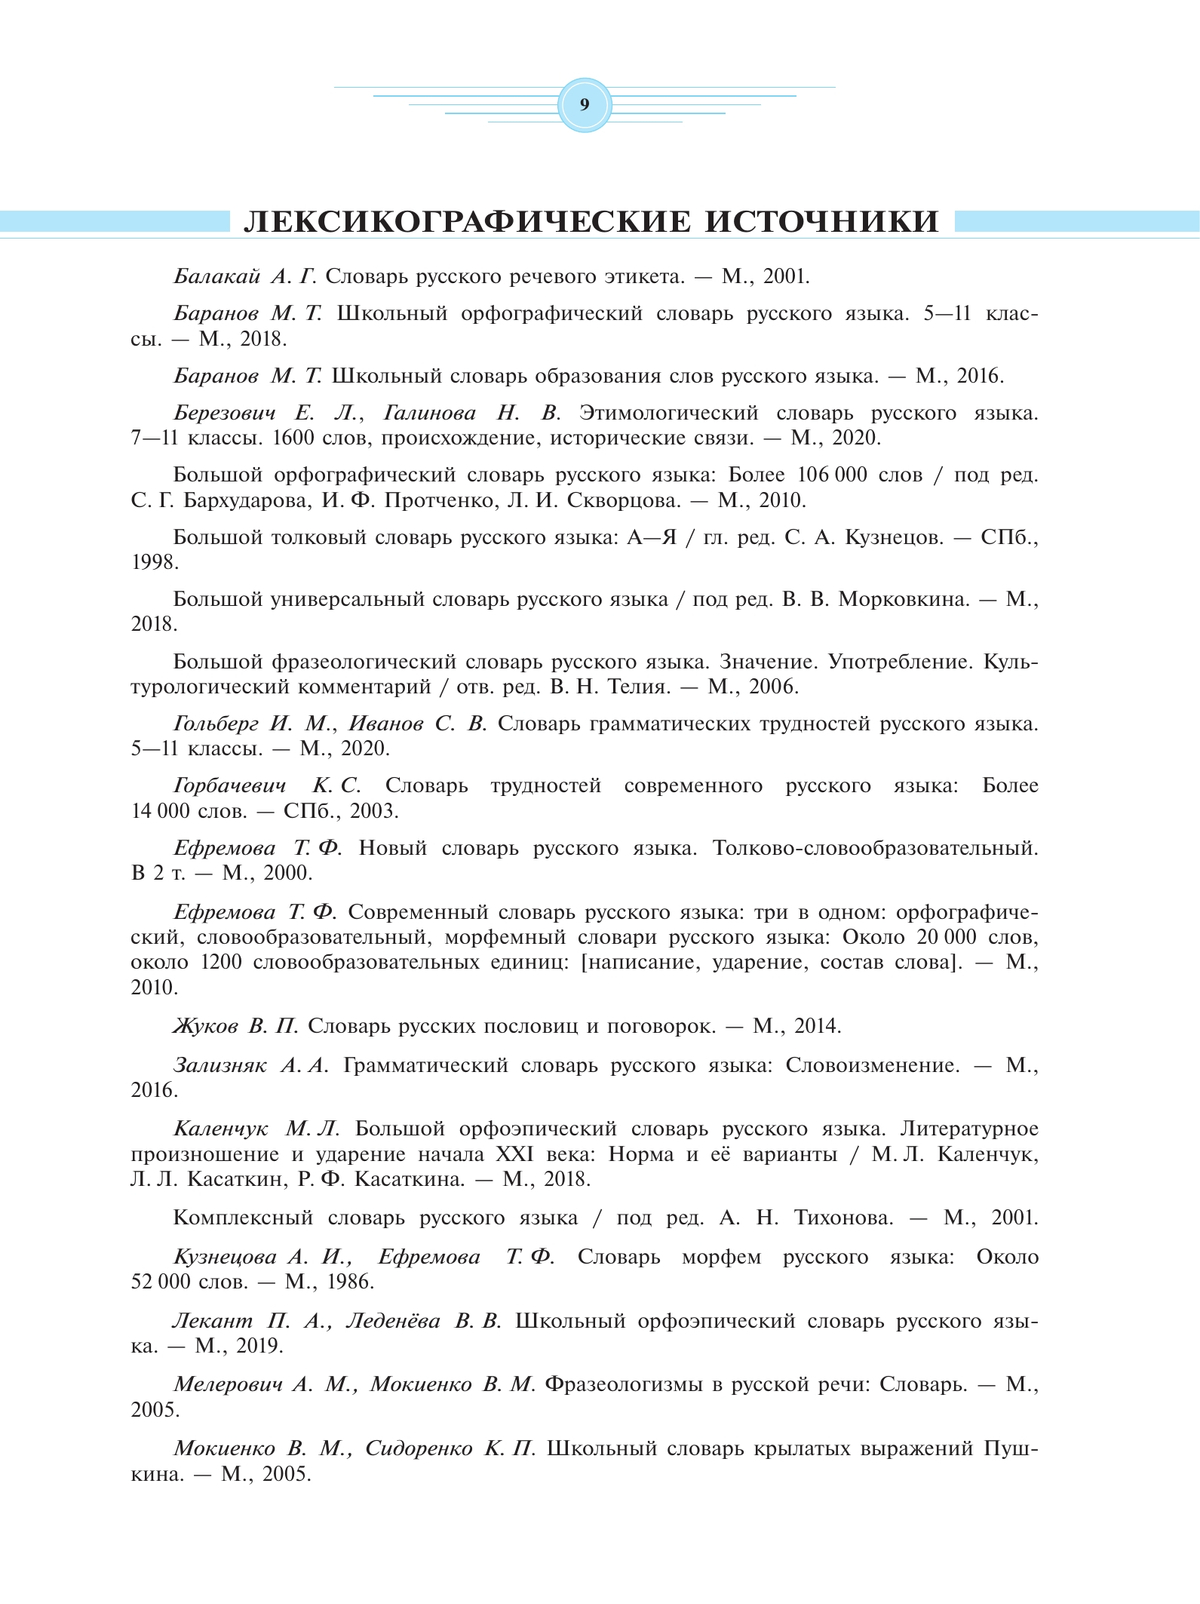 Универсальный словарь русского языка для школьников: более 5000 словарных статей 5